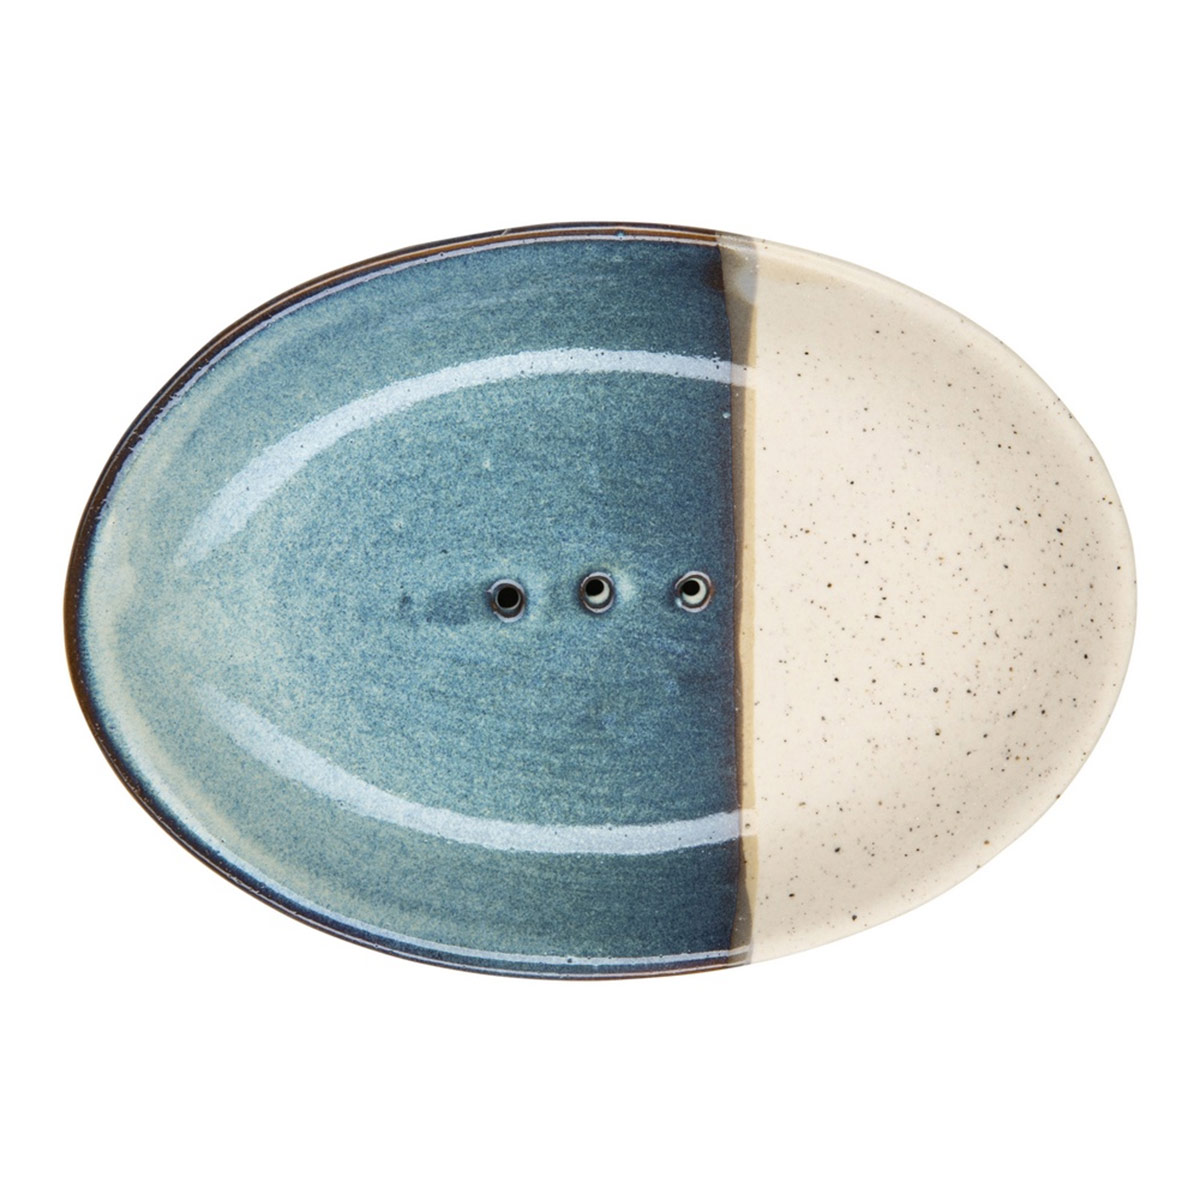 Tranquillo ovale Seifenschale RUSTIC mit blauem überzug POR316